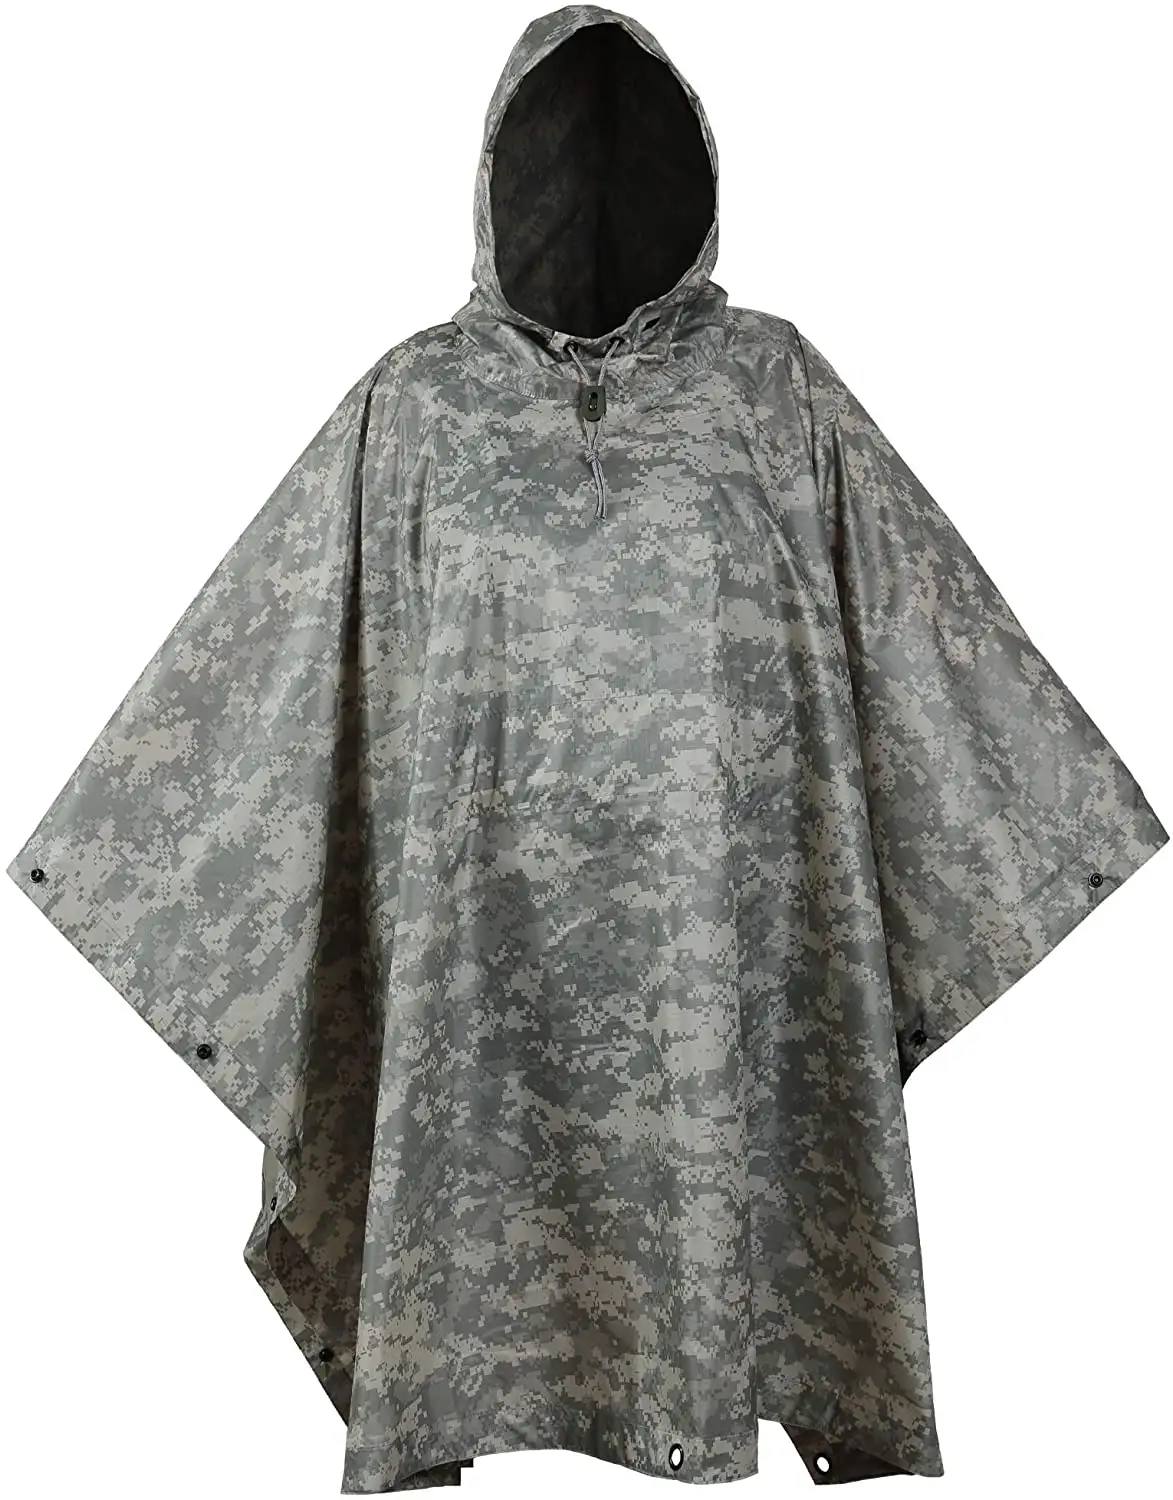 เสื้อกันฝนลายพรางกลางแจ้งพิมพ์เต็มรูปแบบผ้าโพลีเอสเตอร์กันฝนแฟชั่นปลอดภัย